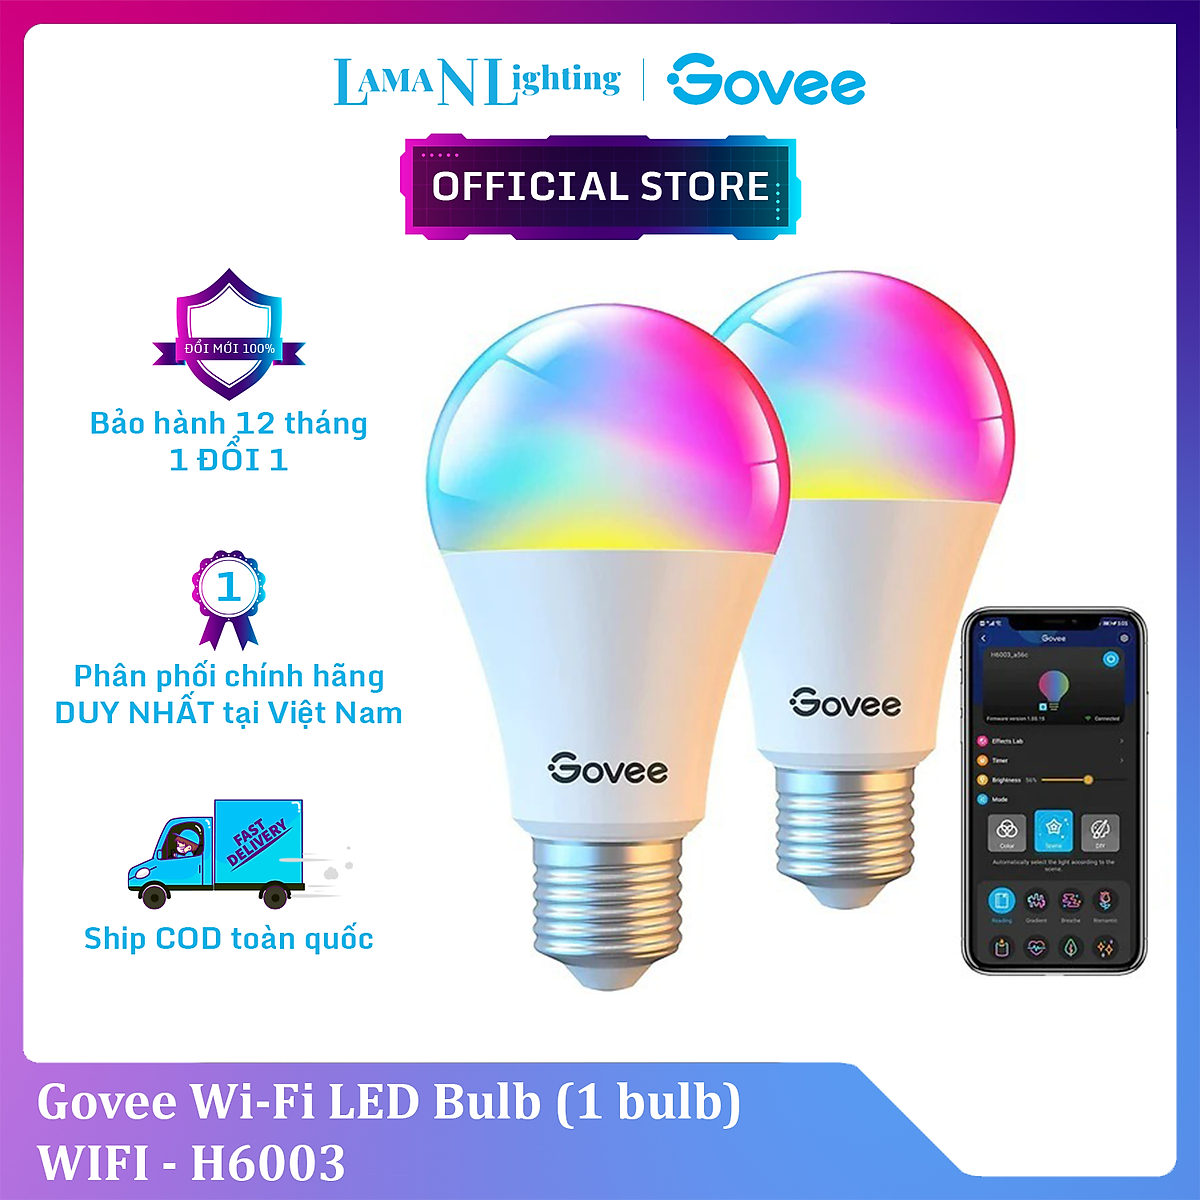 Mua Đèn LED thông minh Govee Wifi LED Bulb H6003 | Bóng led 16 triệu màu,  có hẹn giờ, điều khiển thông minh | Hàng chính hãng tại Đèn led thông minh